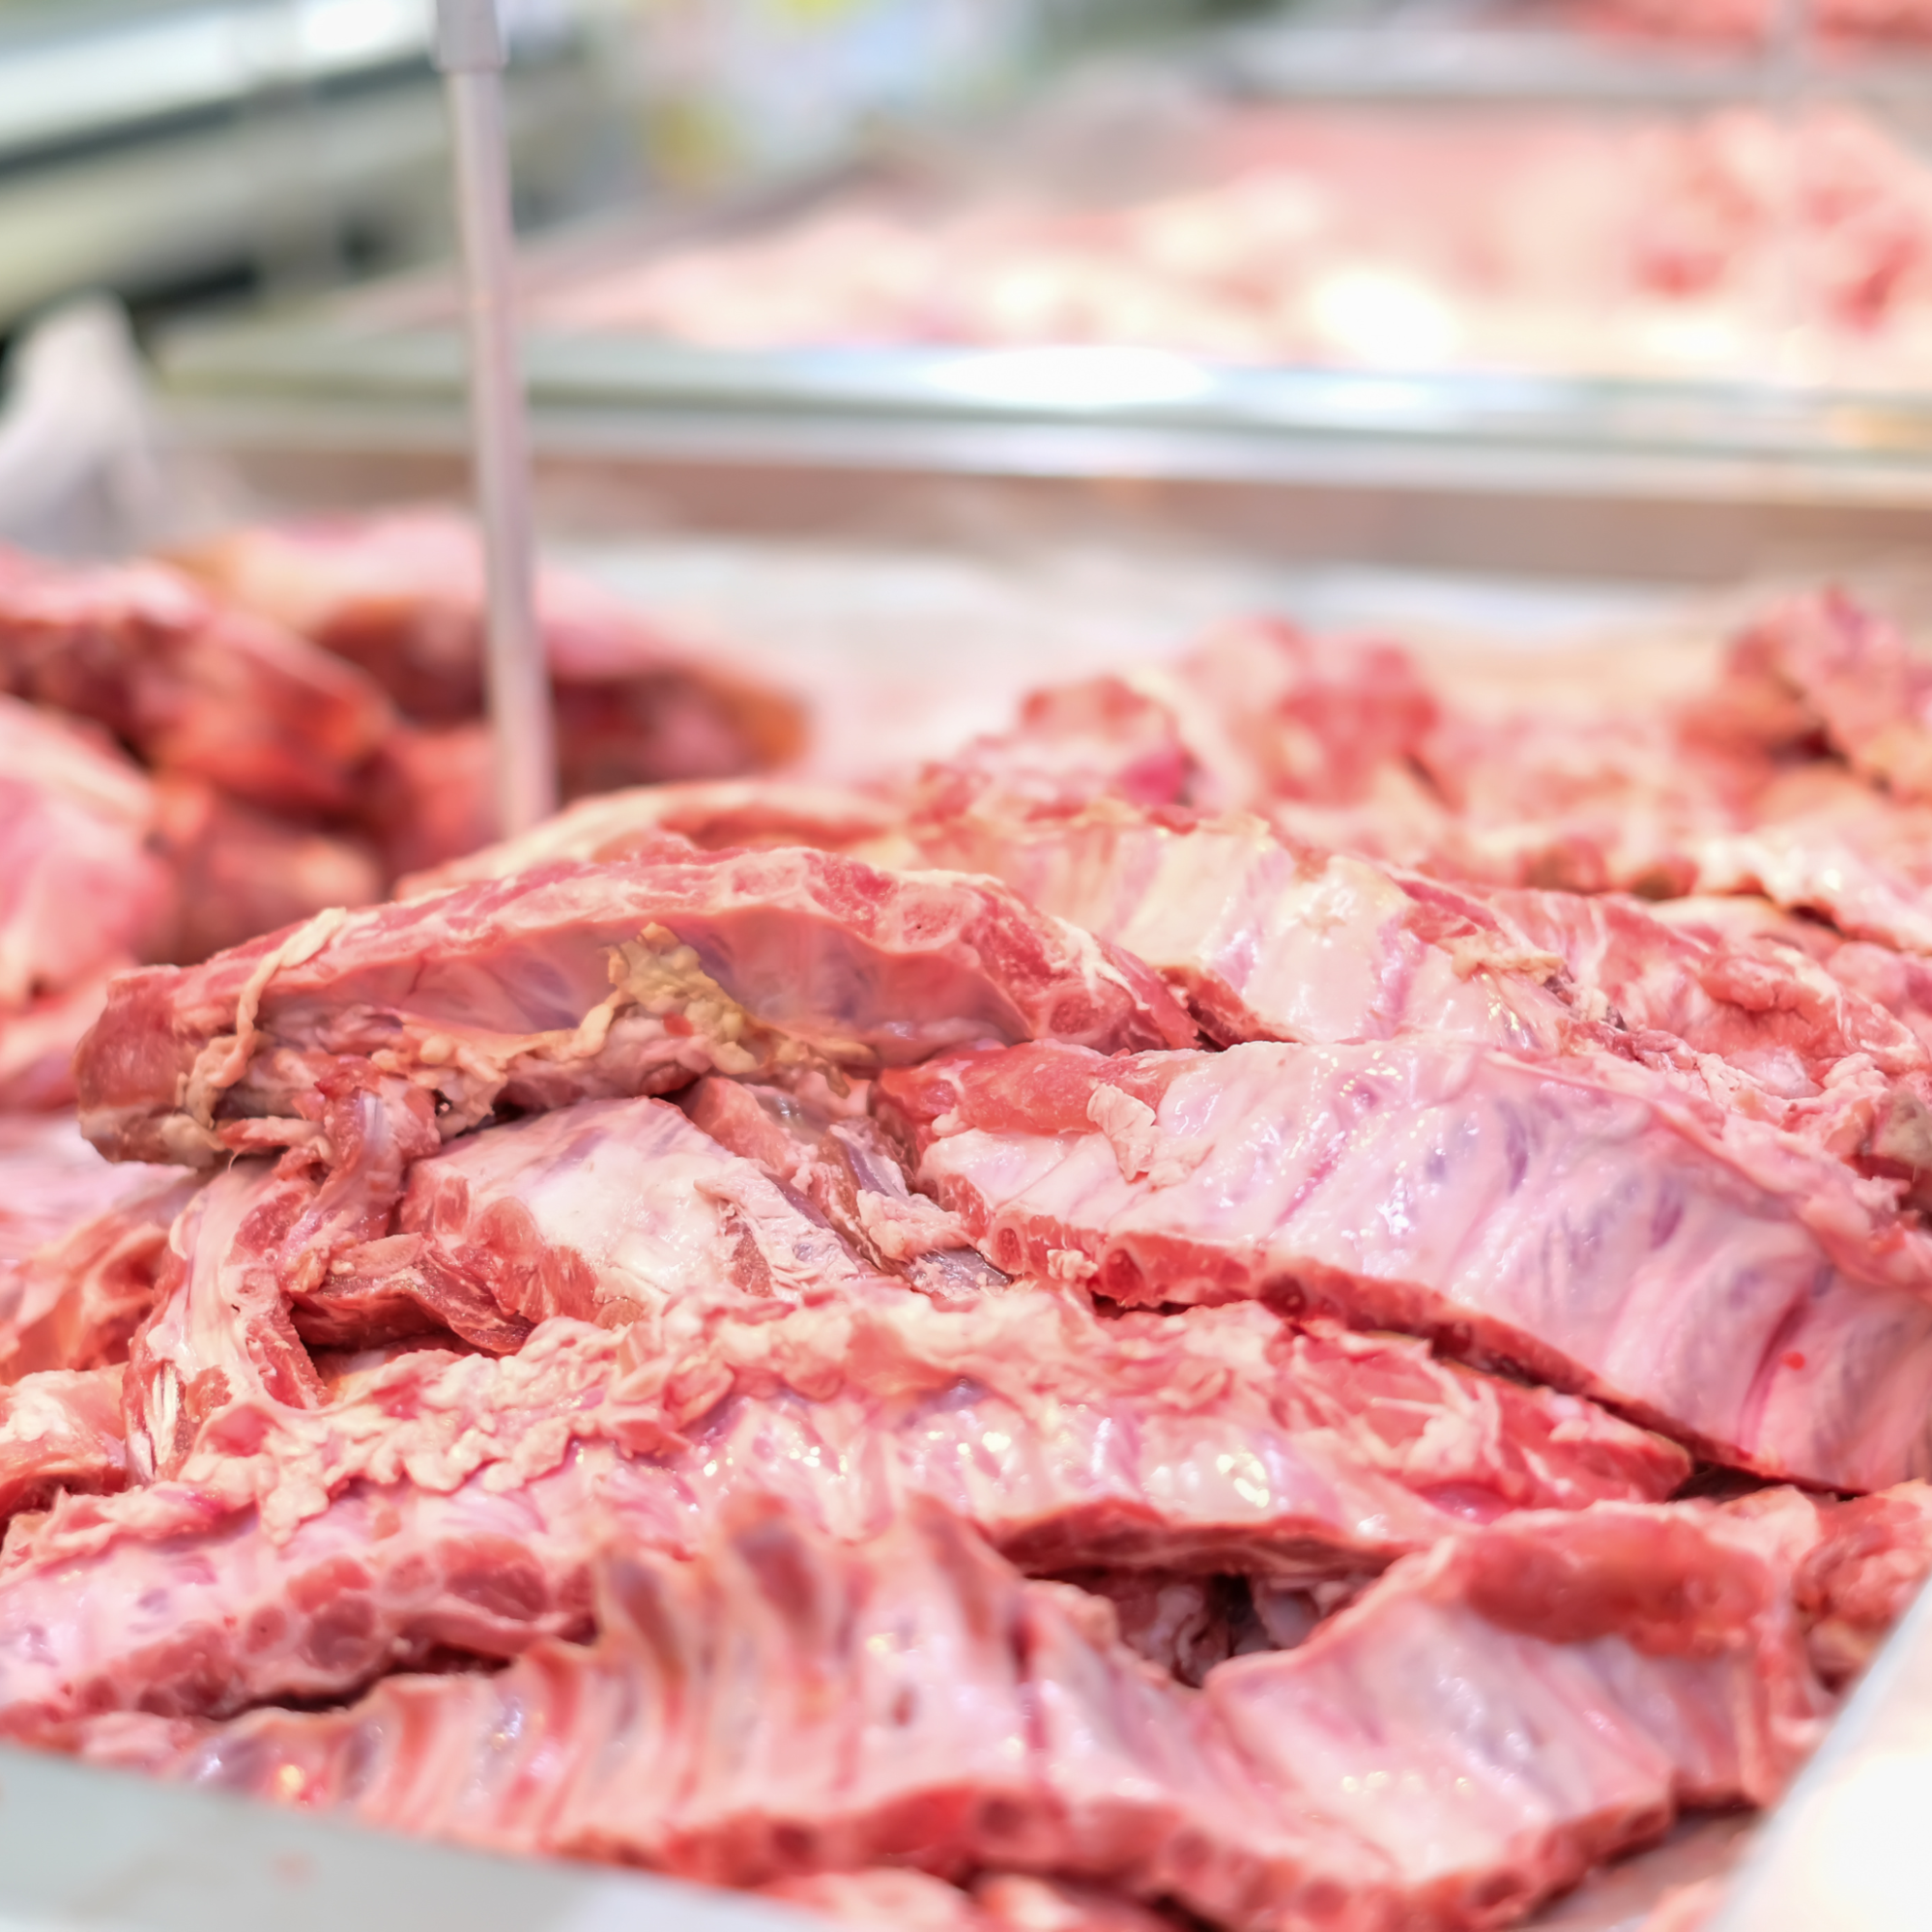 Hãy mua sườn non tại các cửa hàng thịt uy tín, có thương hiệu đáng tin cậy, và tuân thủ quy trình vệ sinh an toàn thực phẩm.